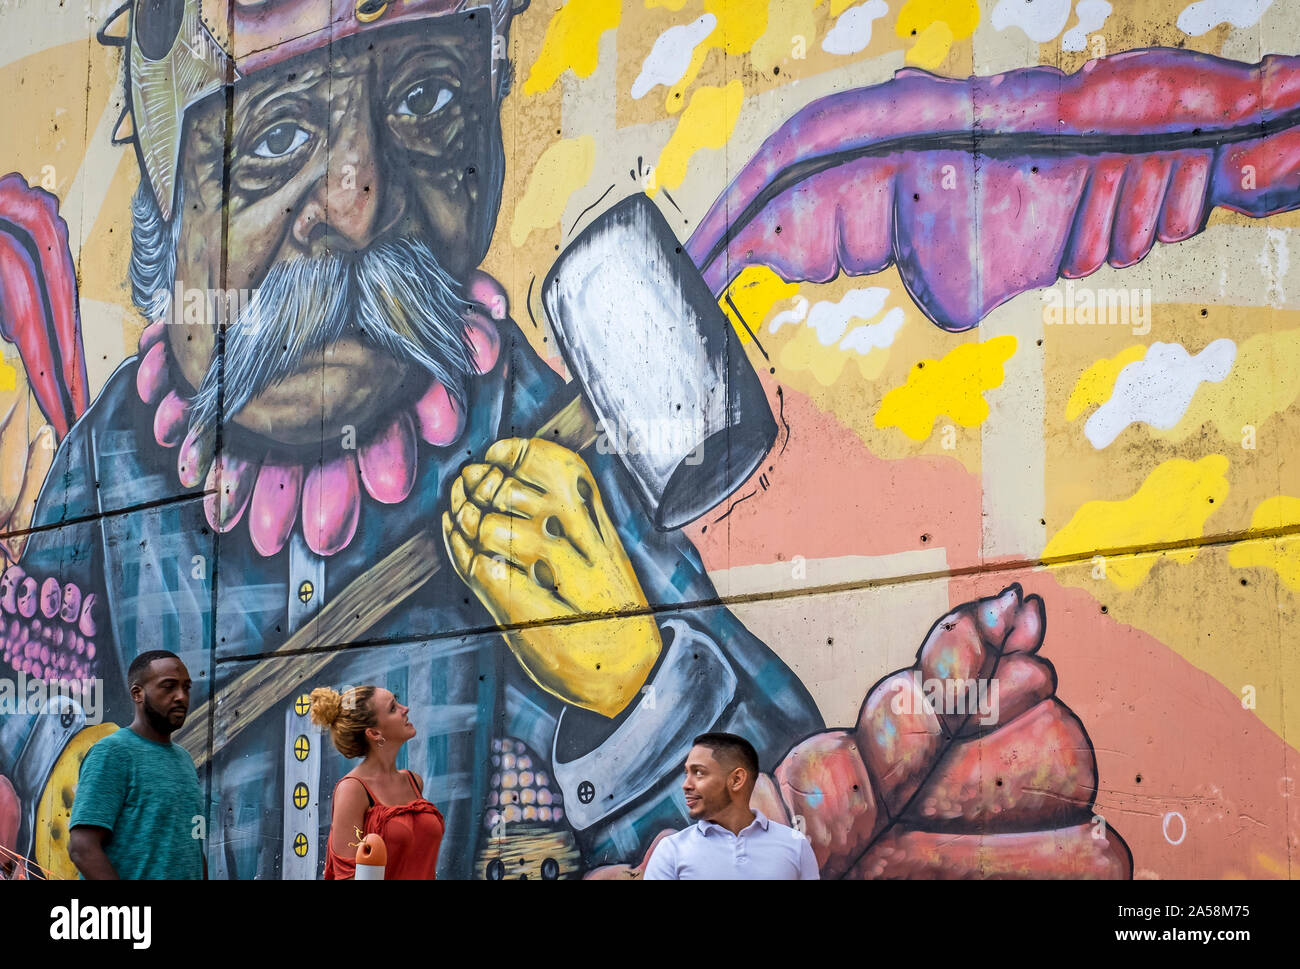 Les touristes, street art, peinture murale, graffiti, Comuna 13, Medellín, Colombie Banque D'Images